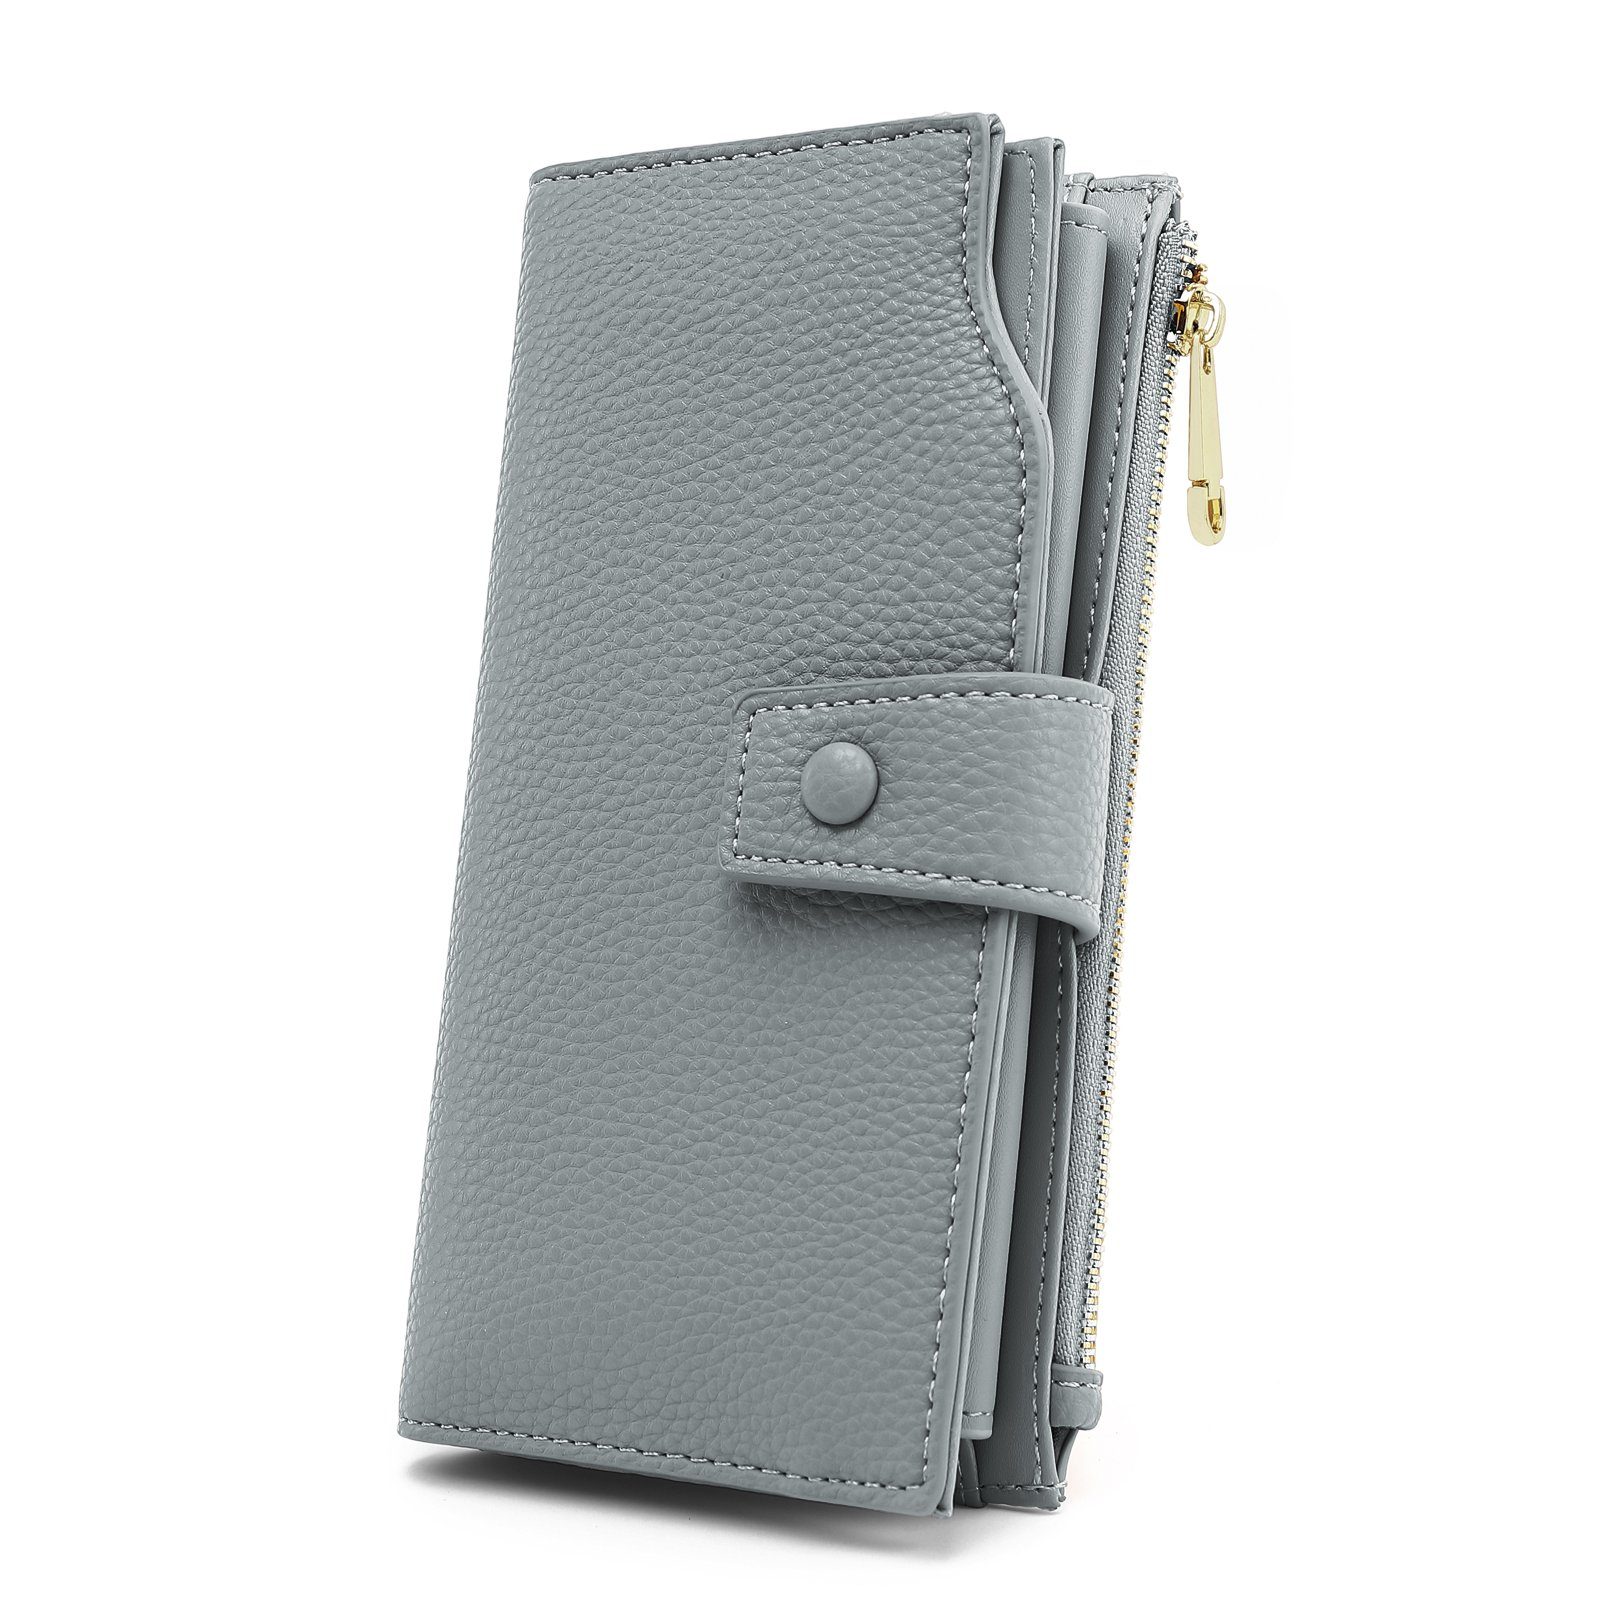 TAN.TOMI Brieftasche Portemonnaie Damen, Geldbörse für Frauen mit Lanyard (Brieftasche), Geldbörse aus hochwertigem Kunstleder Hellgrau